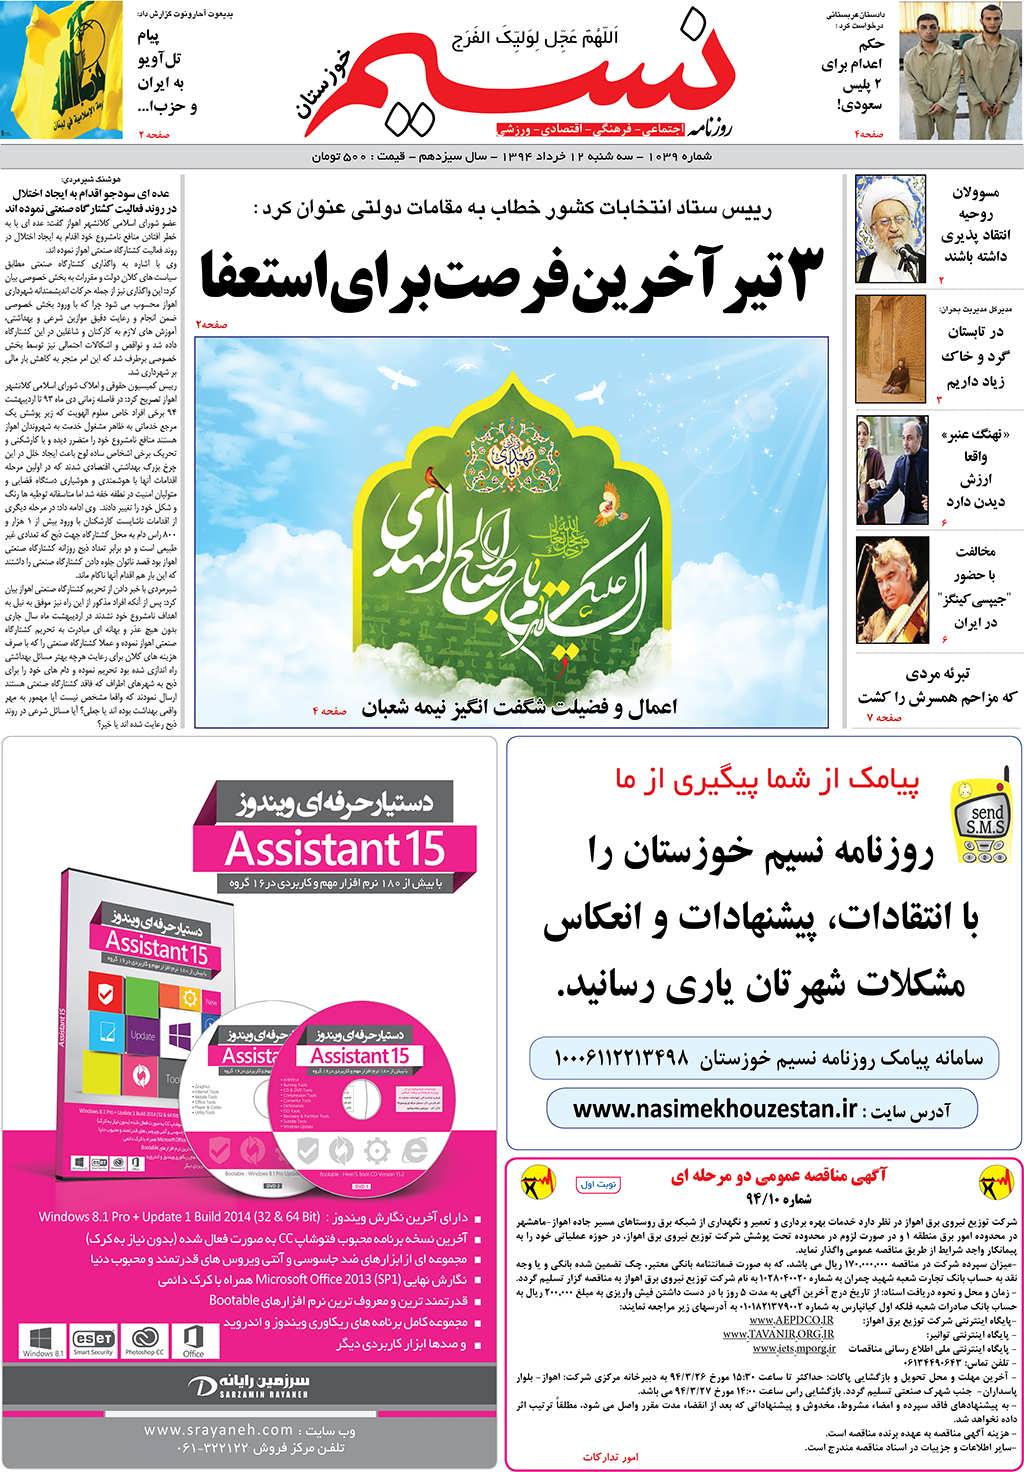 صفحه اصلی روزنامه نسیم شماره 1039